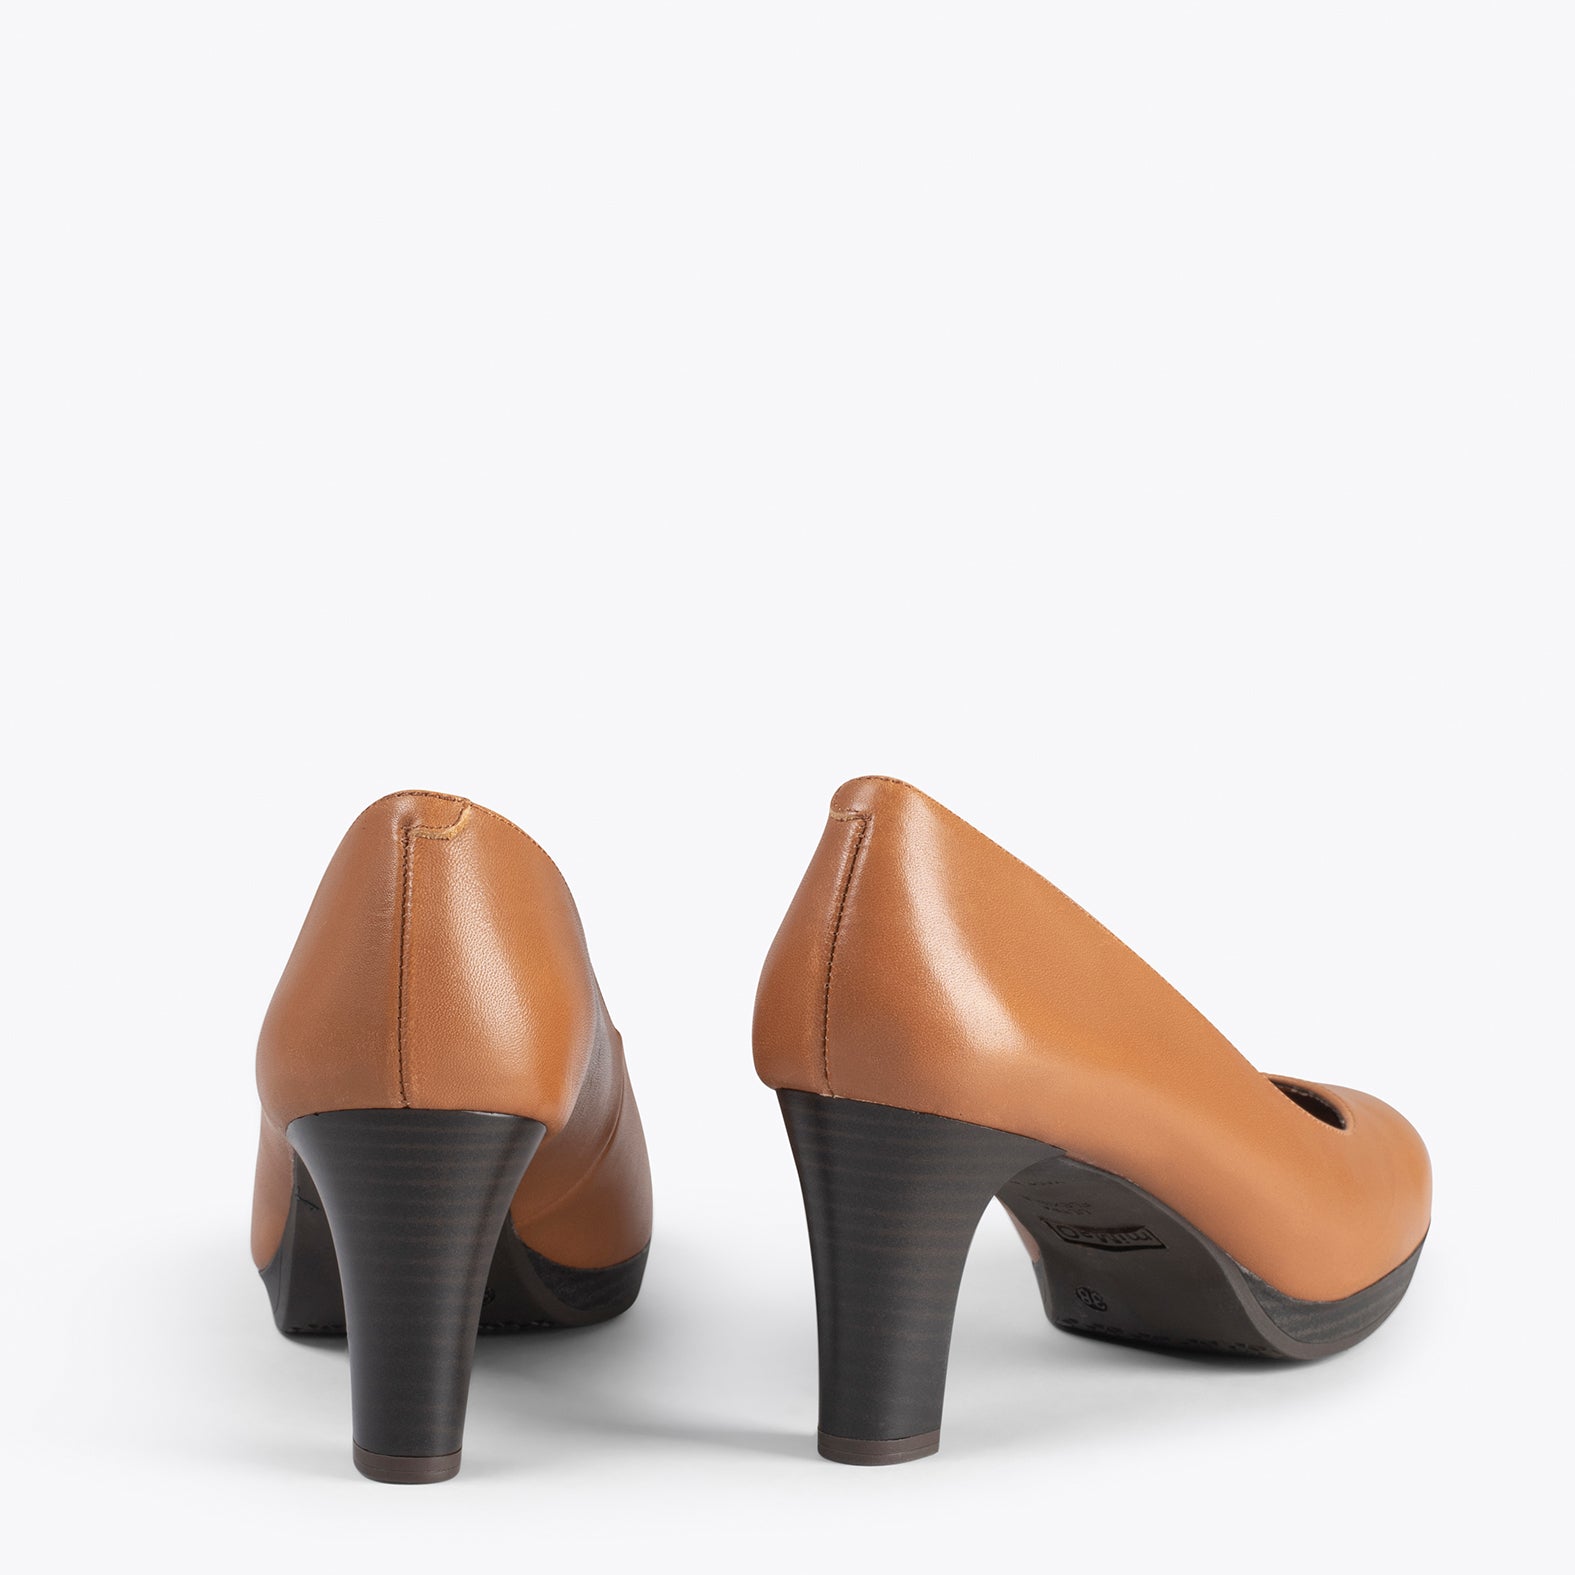 AZAFATA - Zapatos con tacón y plataforma MARRÓN